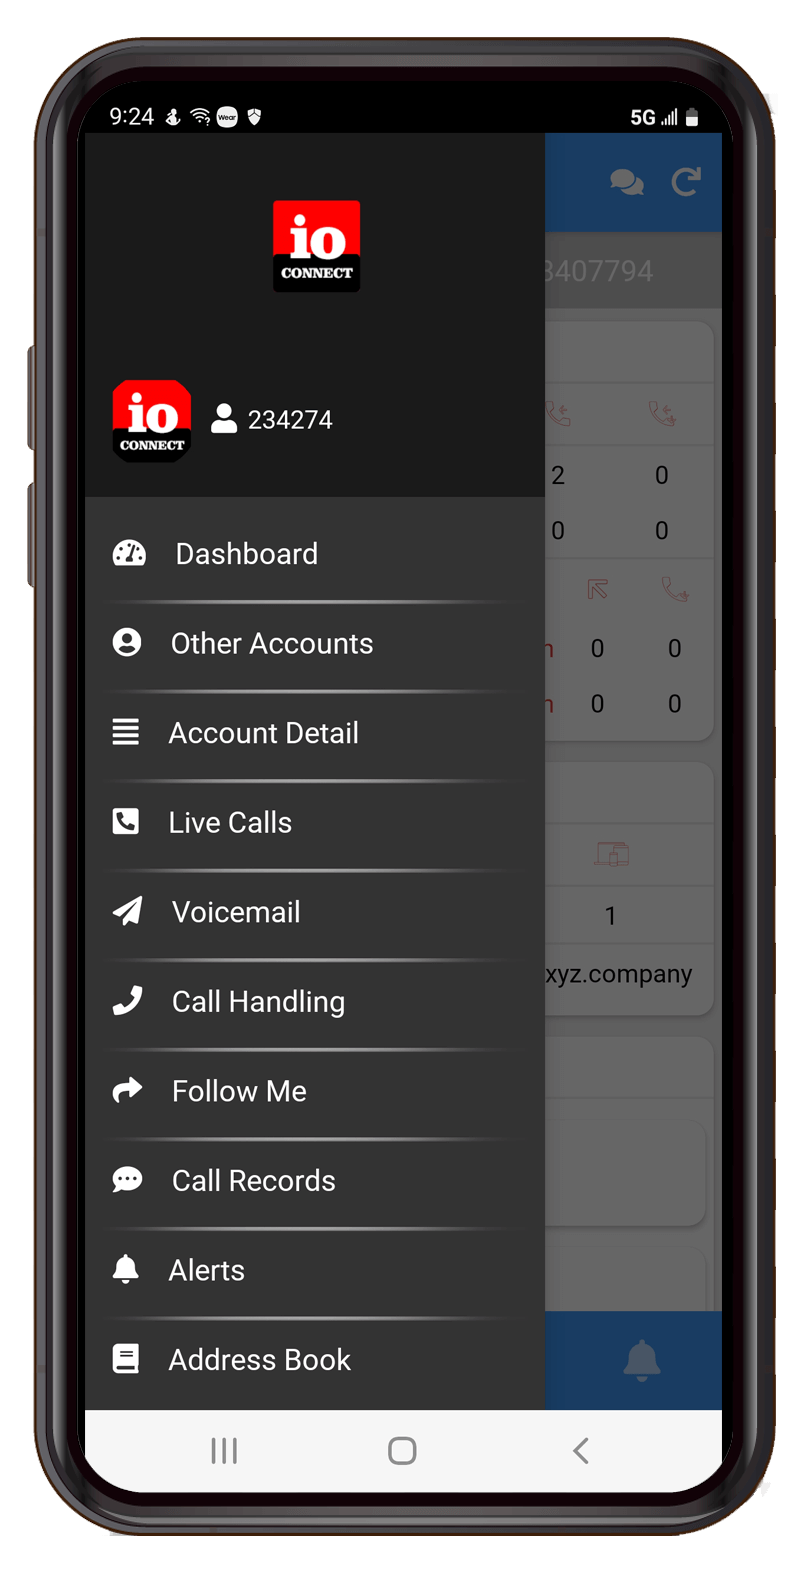 ioCONNECT - Account Management App